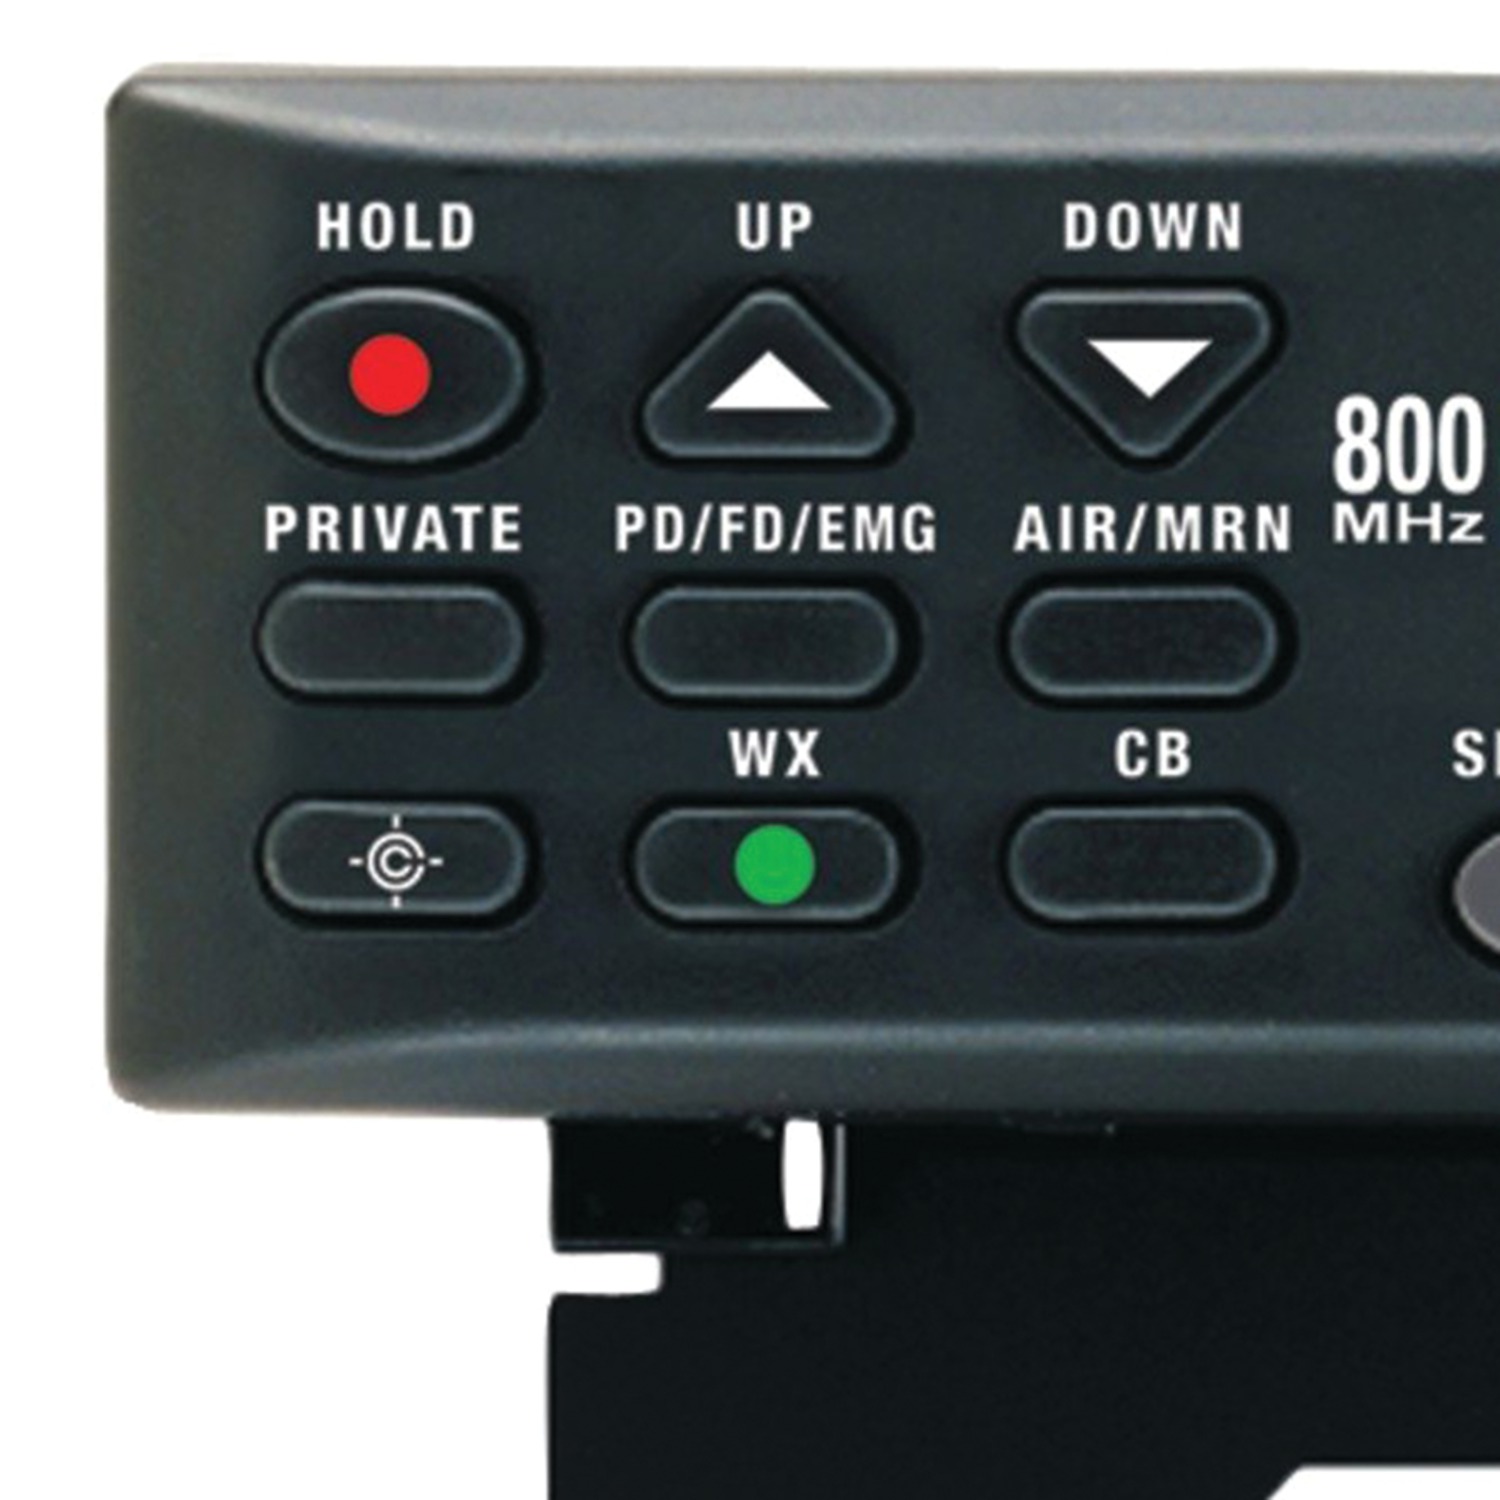 Uniden 800 MHz 300-Channel Base Mobile Scanner (BC355N) Black 